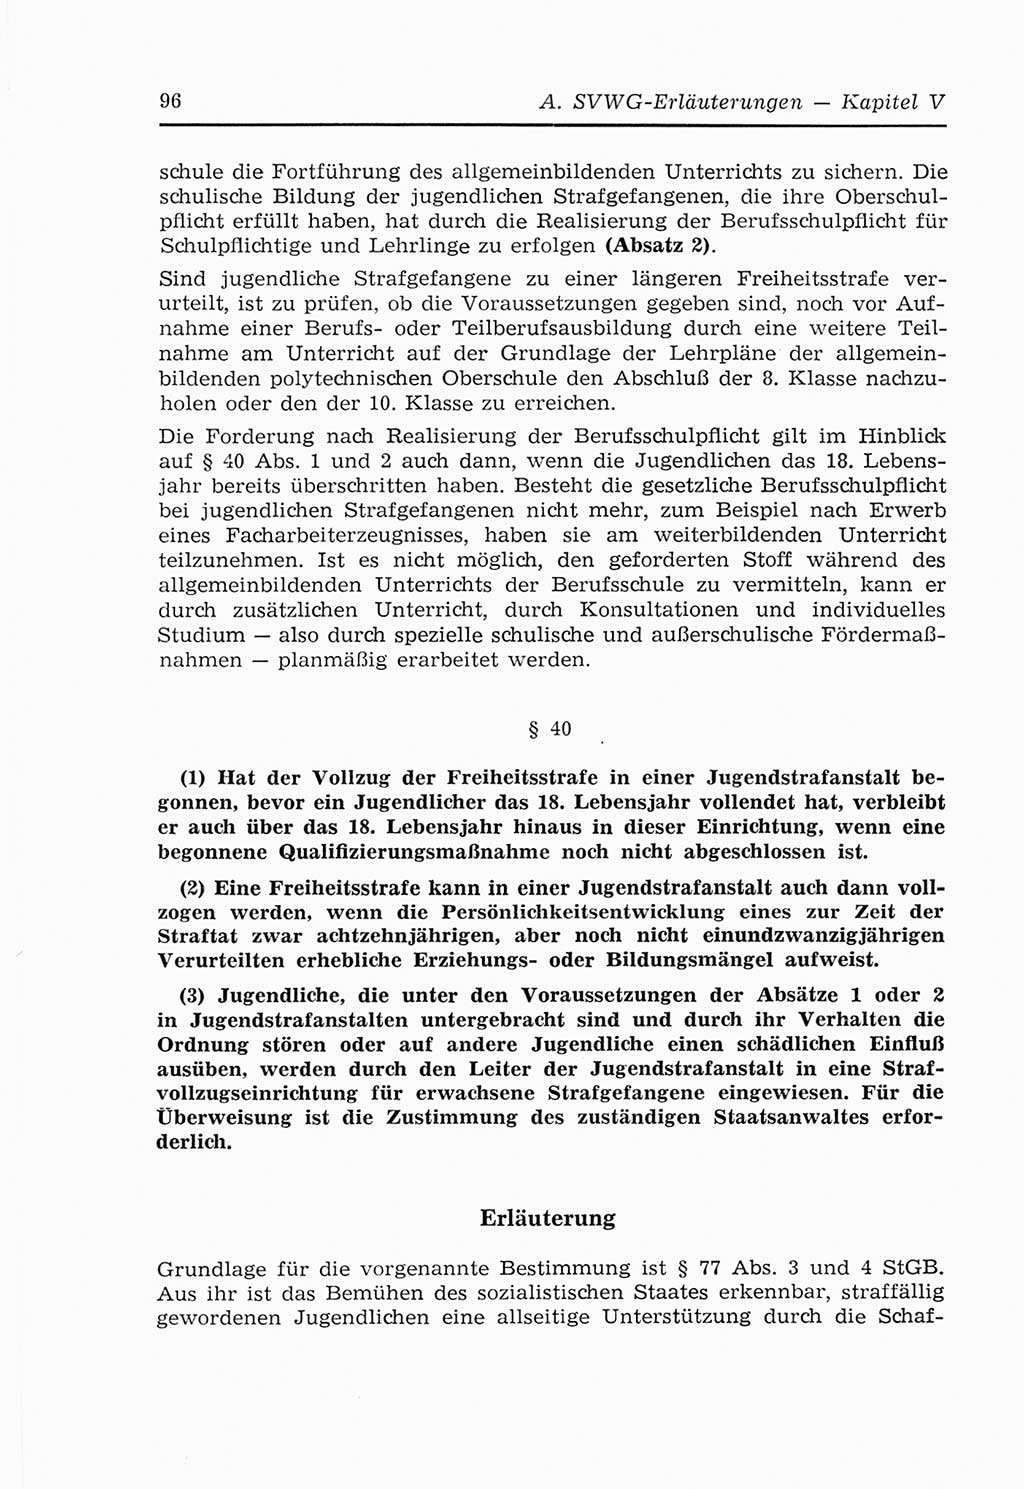 Strafvollzugs- und Wiedereingliederungsgesetz (SVWG) der Deutschen Demokratischen Republik (DDR) 1968, Seite 96 (SVWG DDR 1968, S. 96)